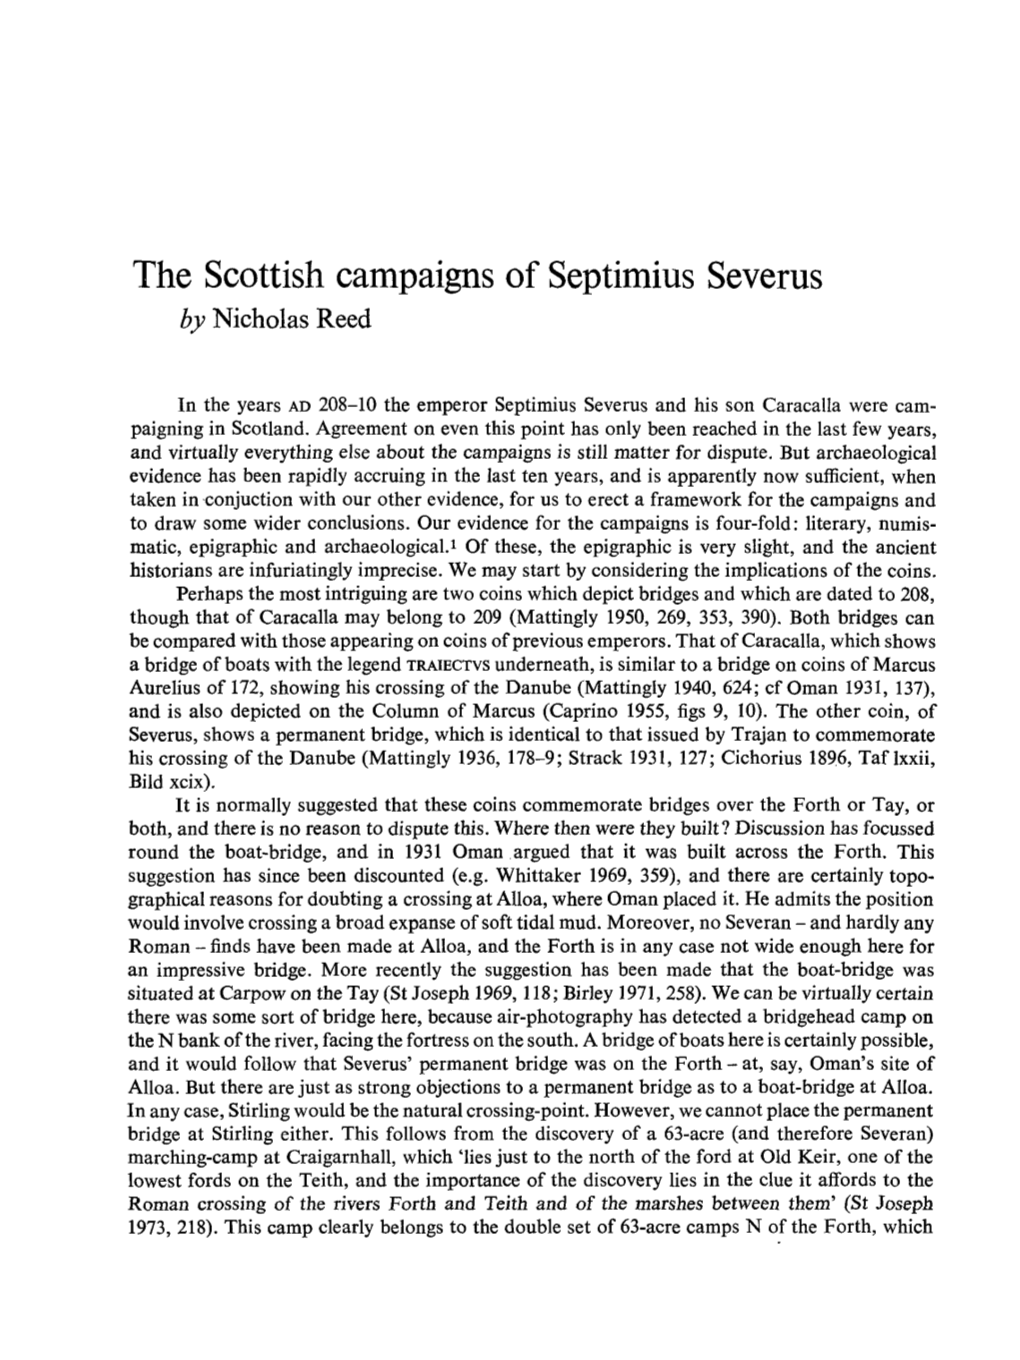 The Scottish Campaigns of Septimius Severus